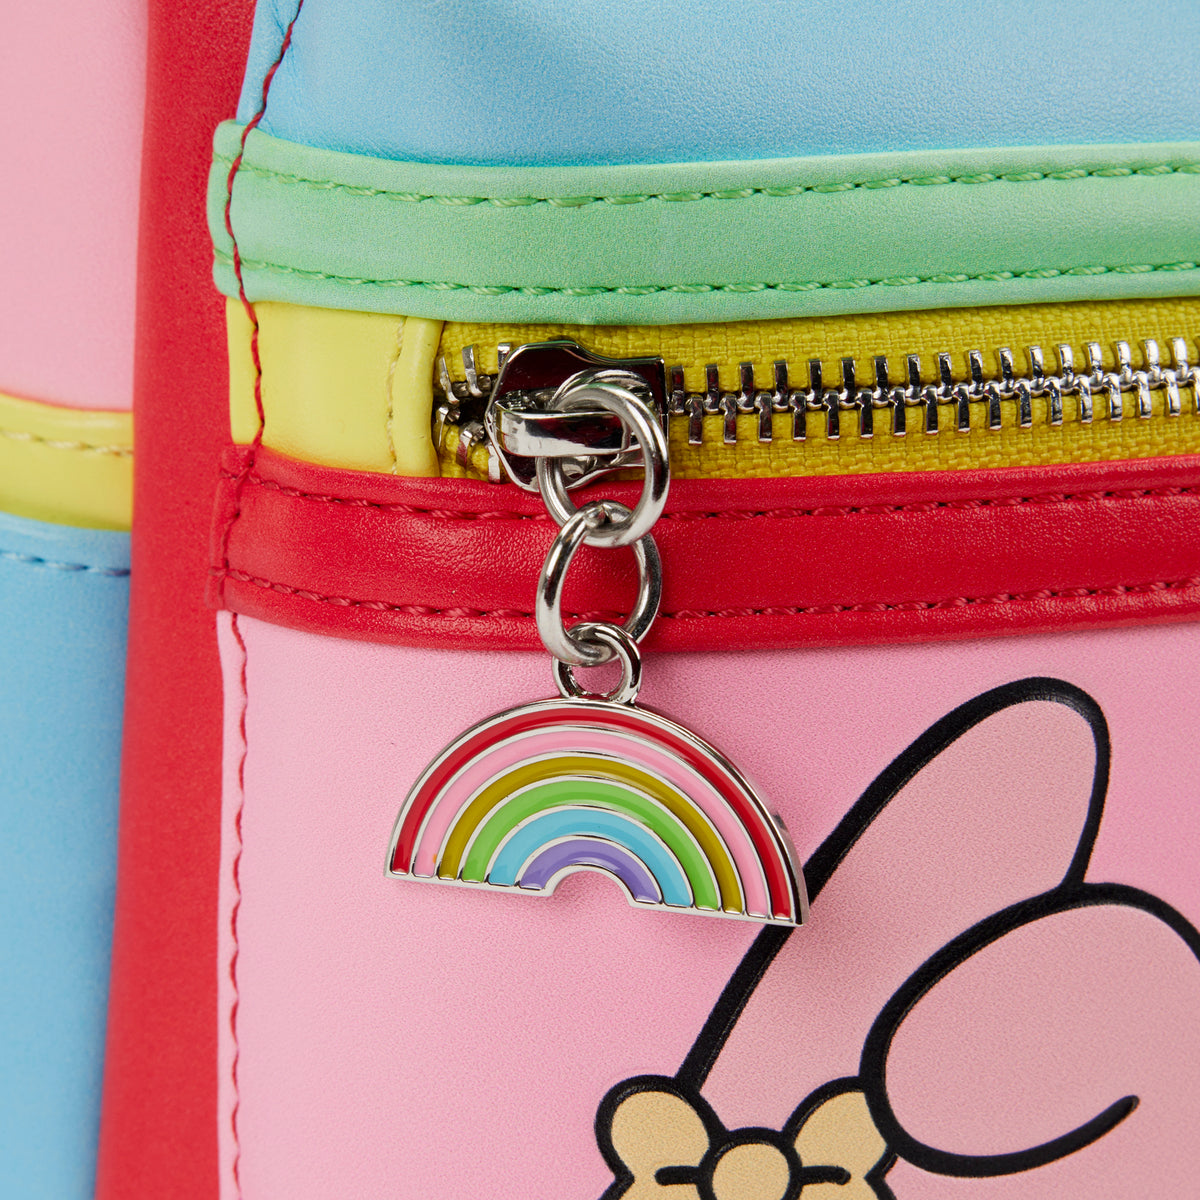 Hello Kitty Friends Mini Backpack